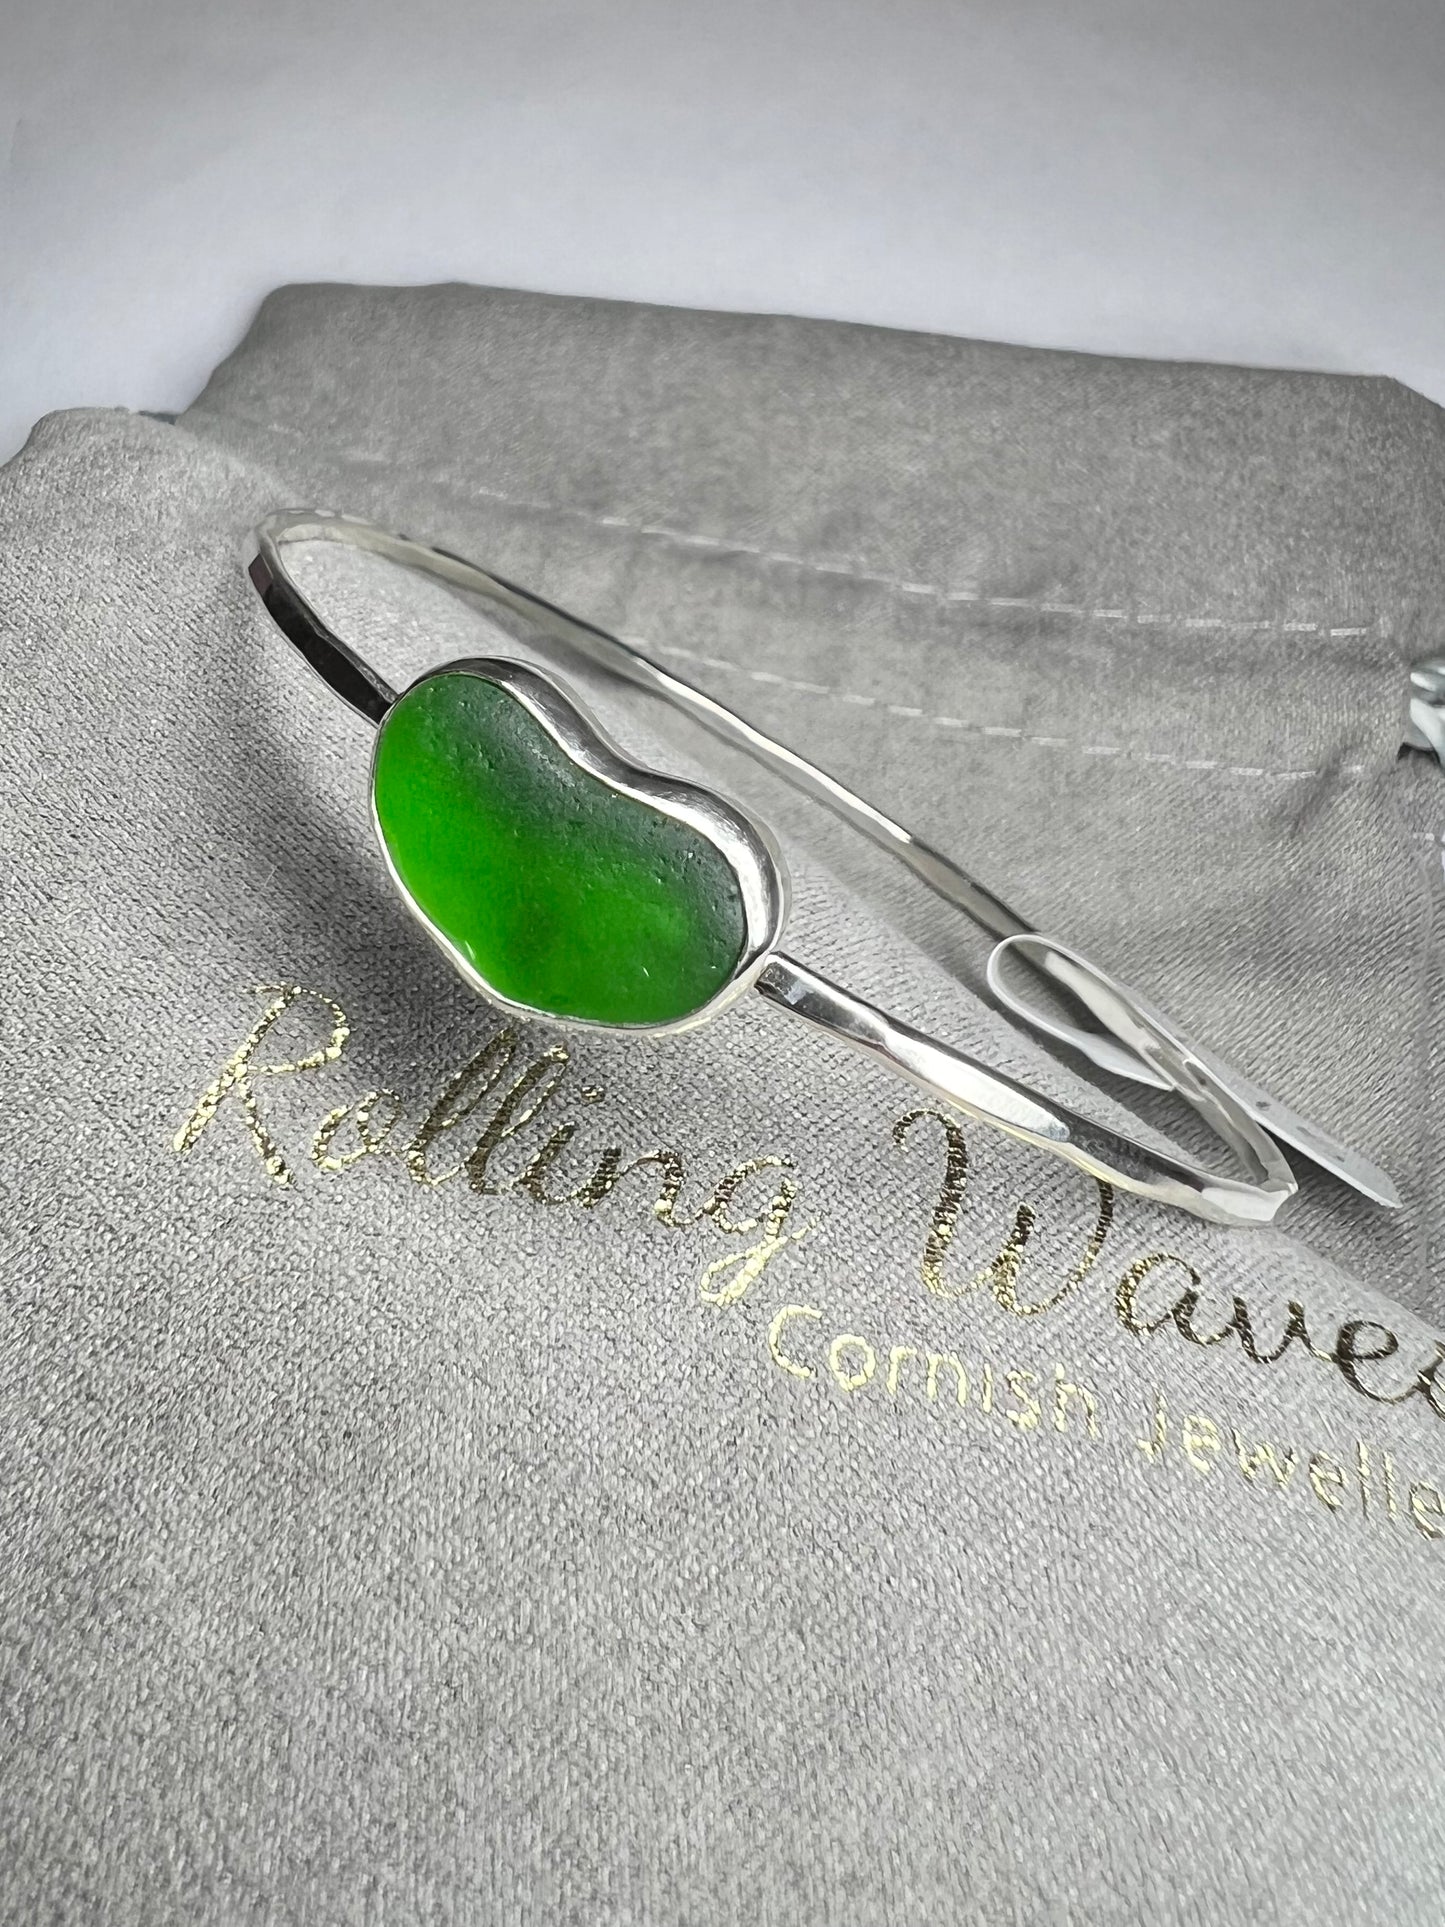 Green Cornish seaglass bangle